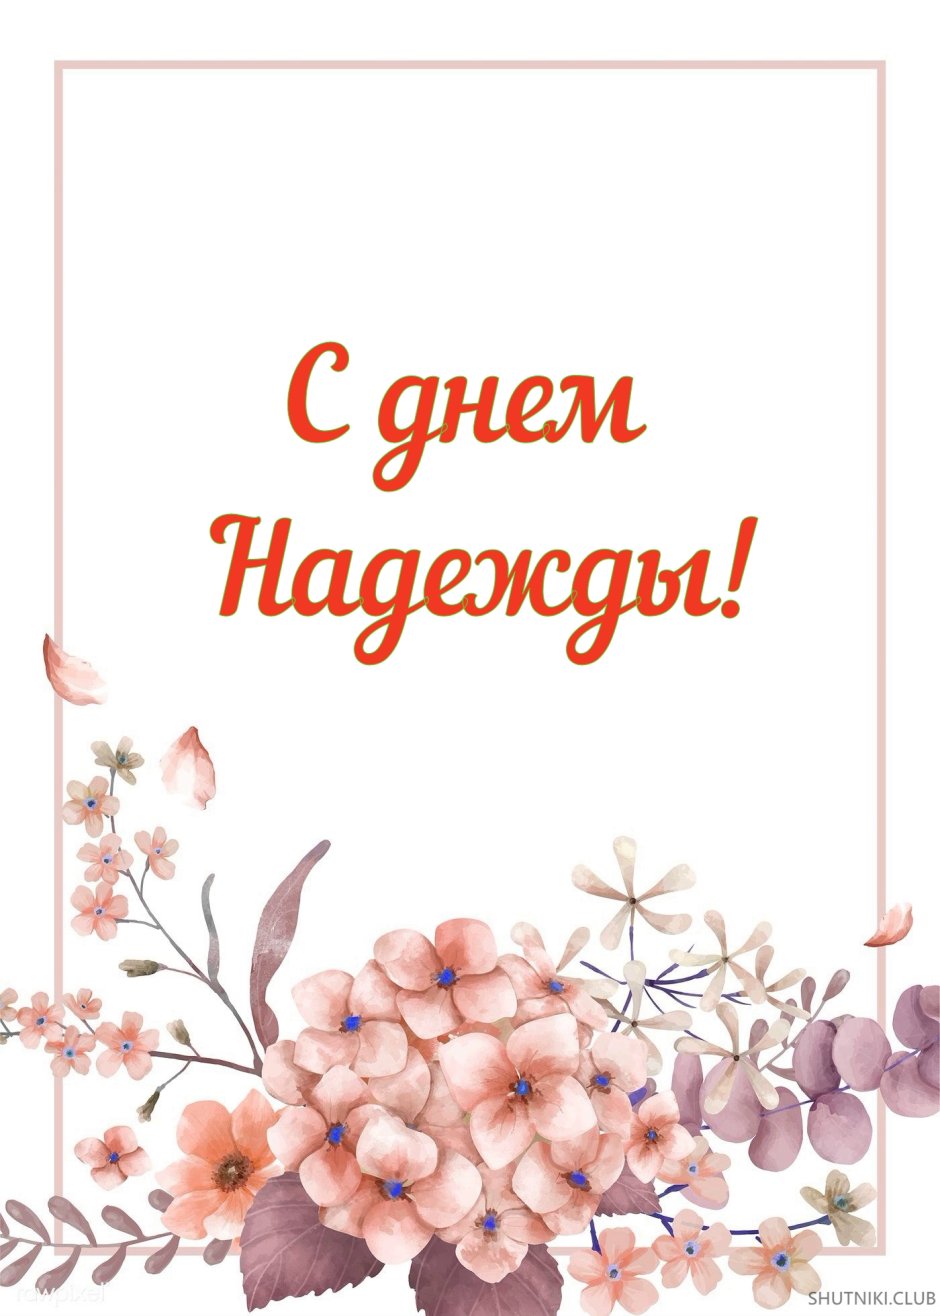 Поздравления с днём рождения надежде Николаевне